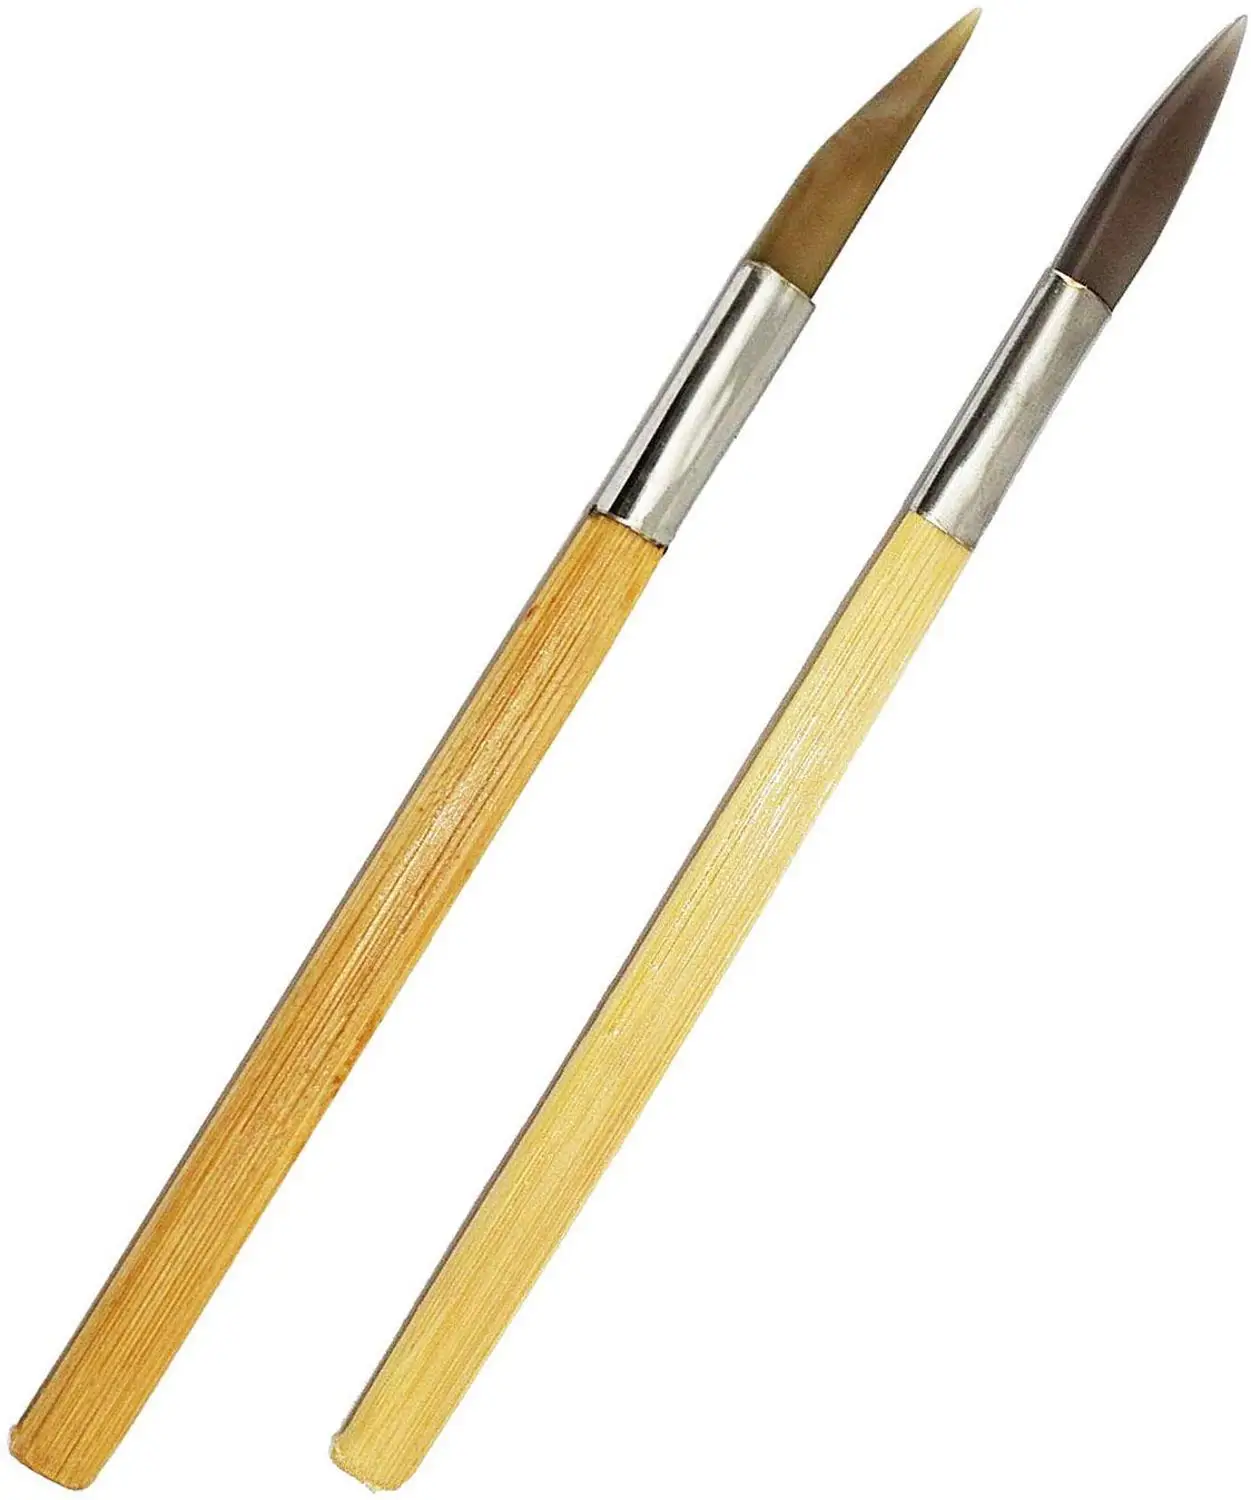 Полировщик из агата с закругленными точками, Бамбуковая ручка, резьба по дереву, драгоценная металлическая глина, латунный инструмент для сглаживания и полировки